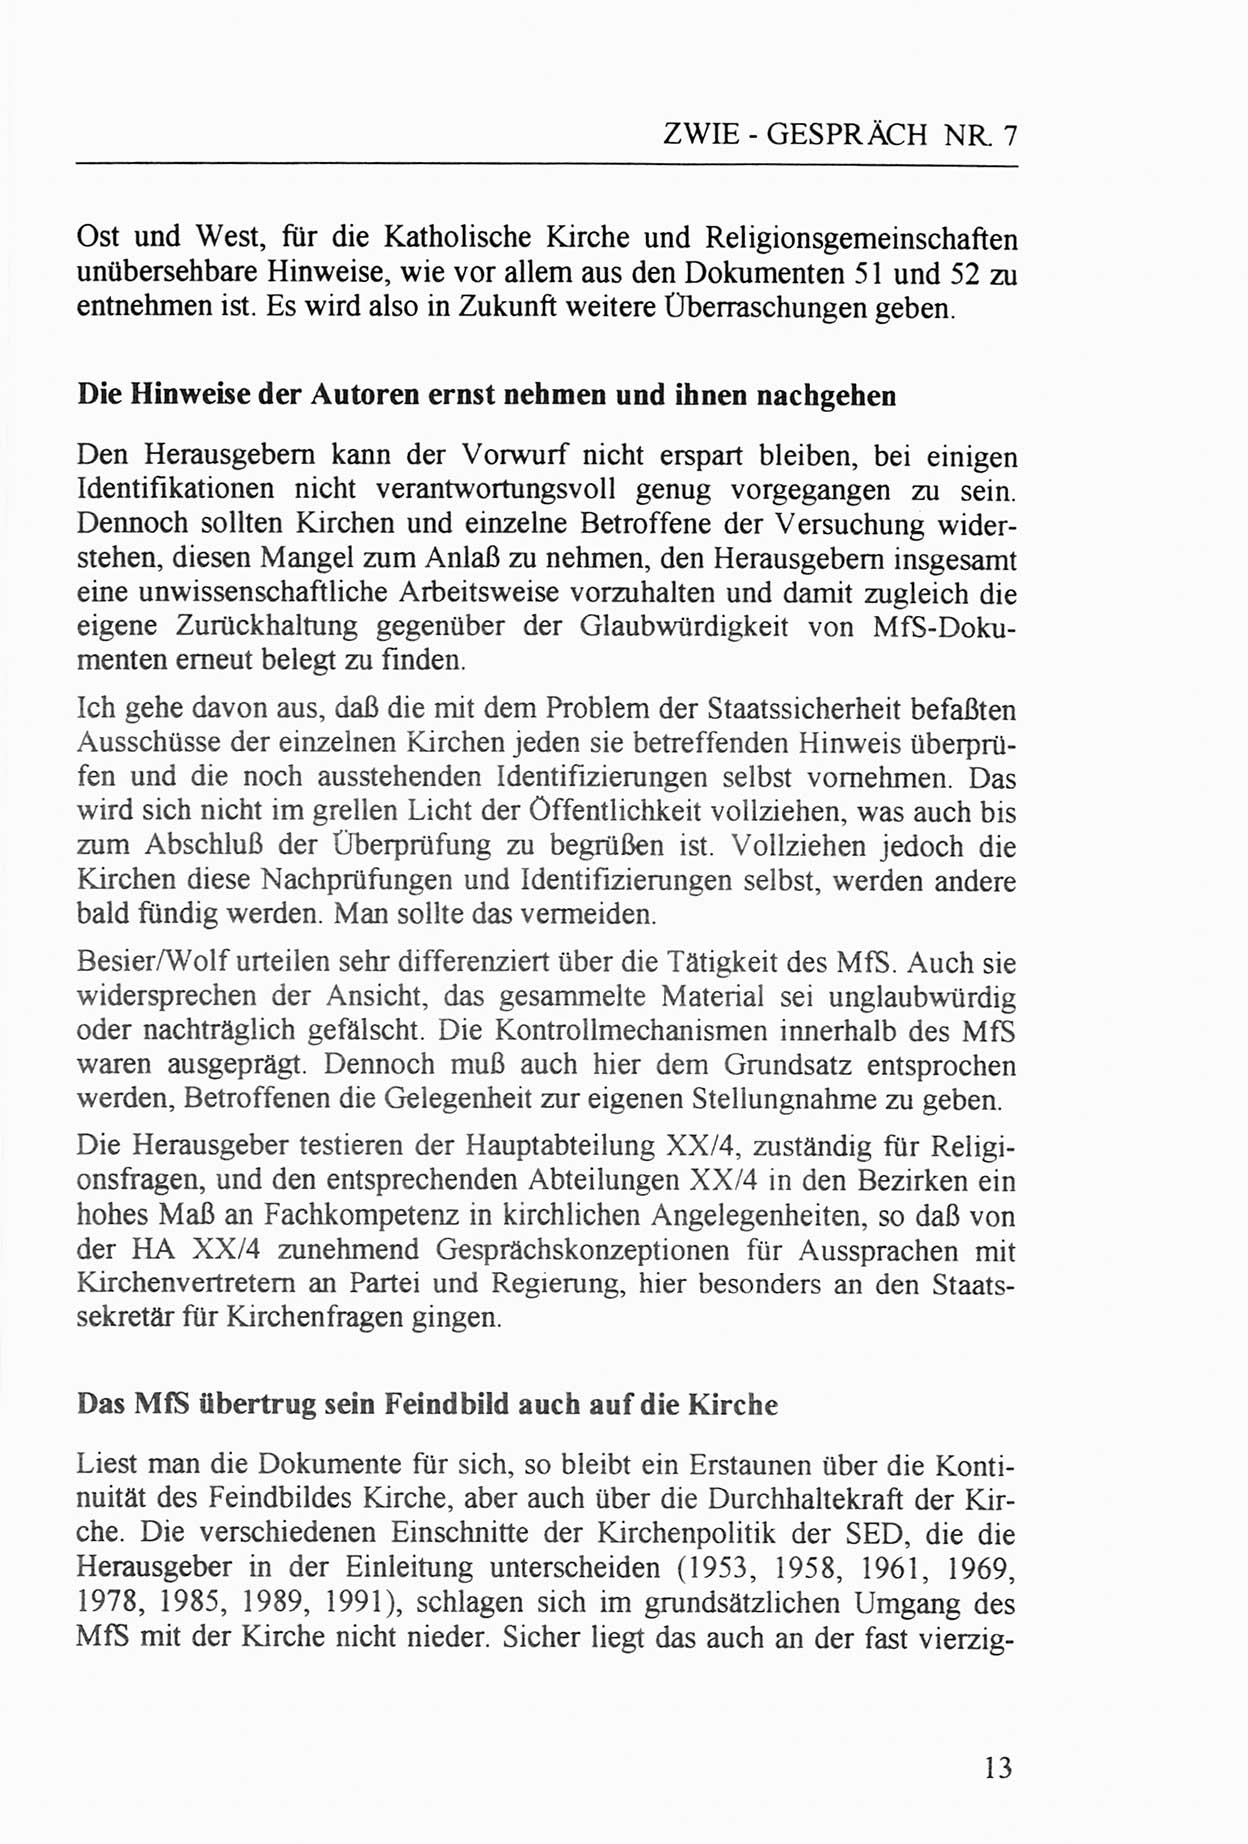 Zwie-Gespräch, Beiträge zur Aufarbeitung der Staatssicherheits-Vergangenheit [Deutsche Demokratische Republik (DDR)], Ausgabe Nr. 7, Berlin 1992, Seite 13 (Zwie-Gespr. Ausg. 7 1992, S. 13)